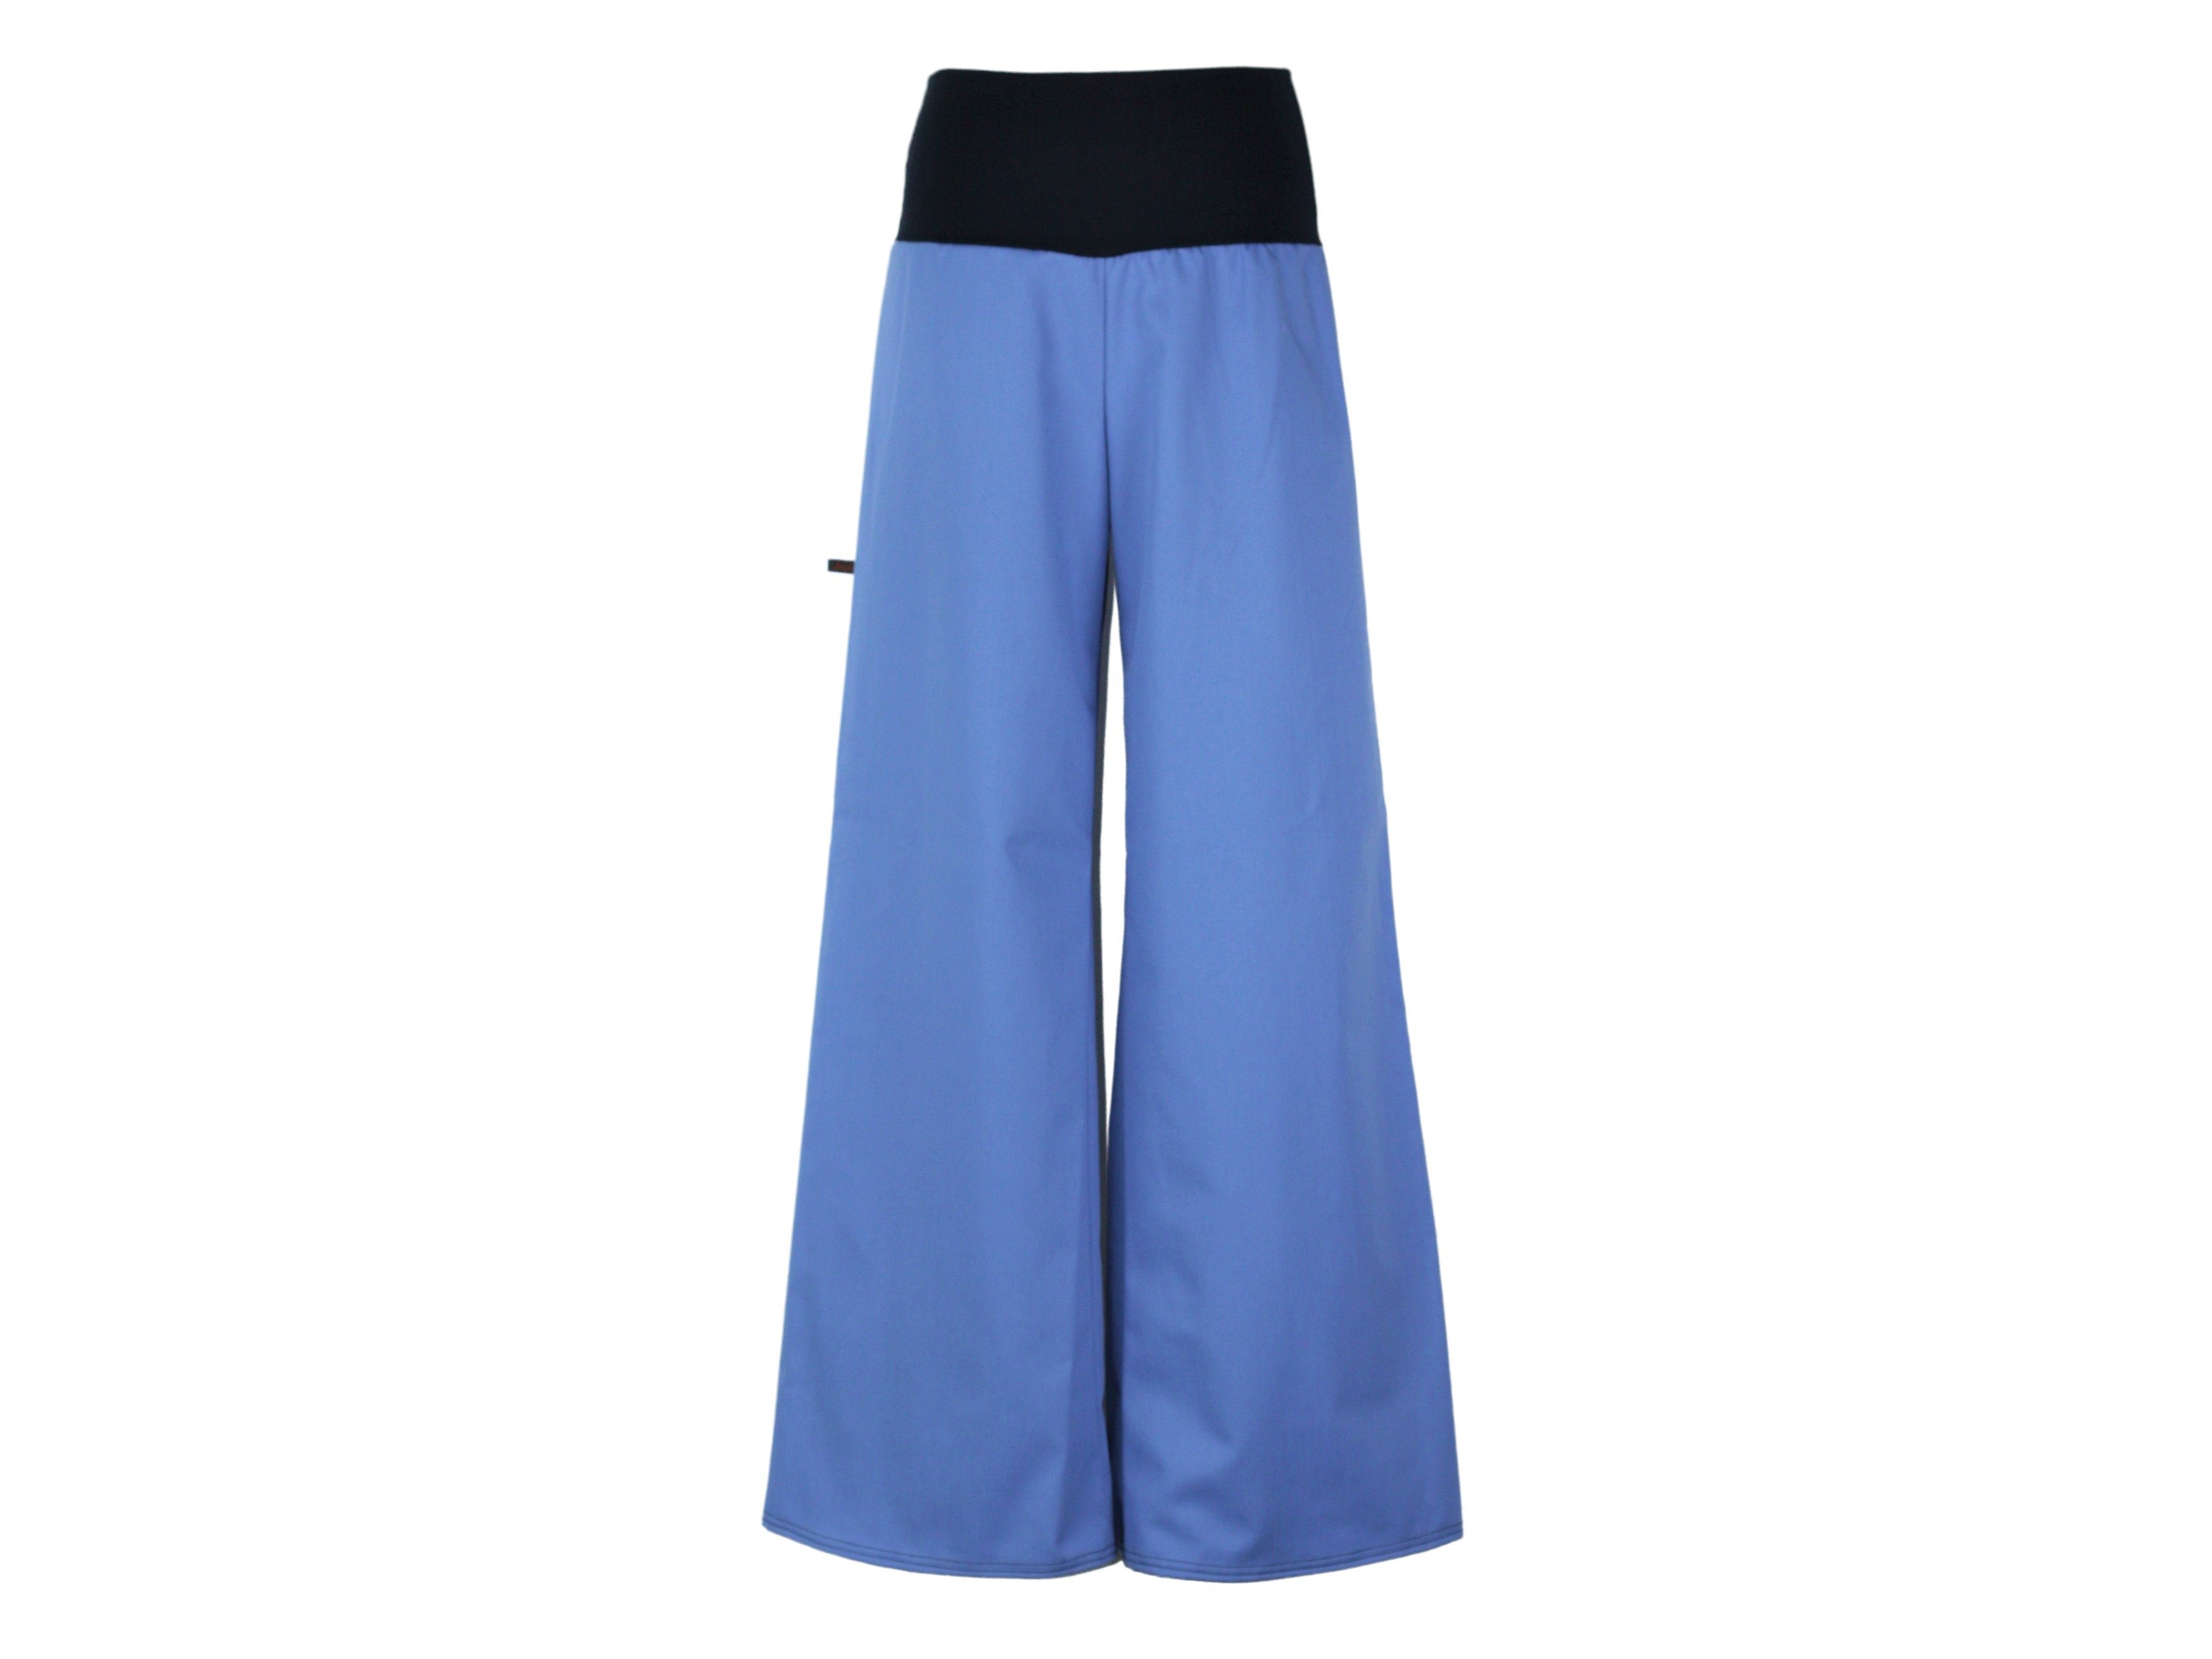 Marlene dunkle Stil Stretch-Jeans weites Bein Blau design